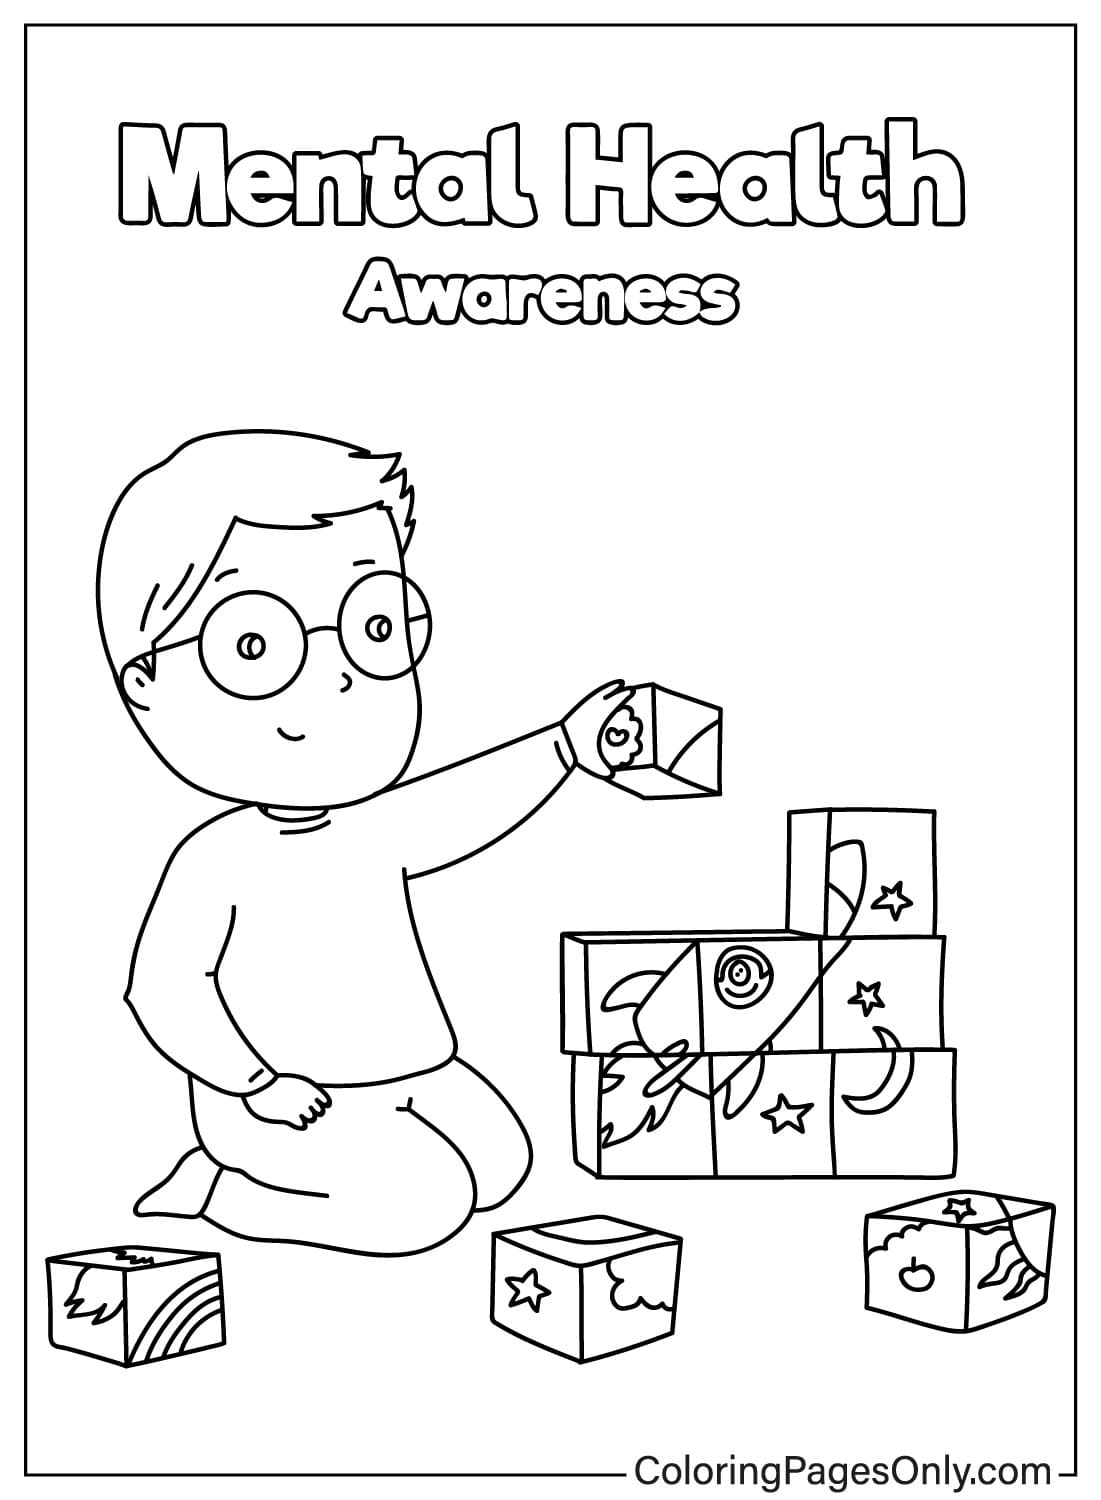 Página para colorear del Mes de Concientización sobre el Autismo para niños del Día Mundial de Concientización sobre el Autismo